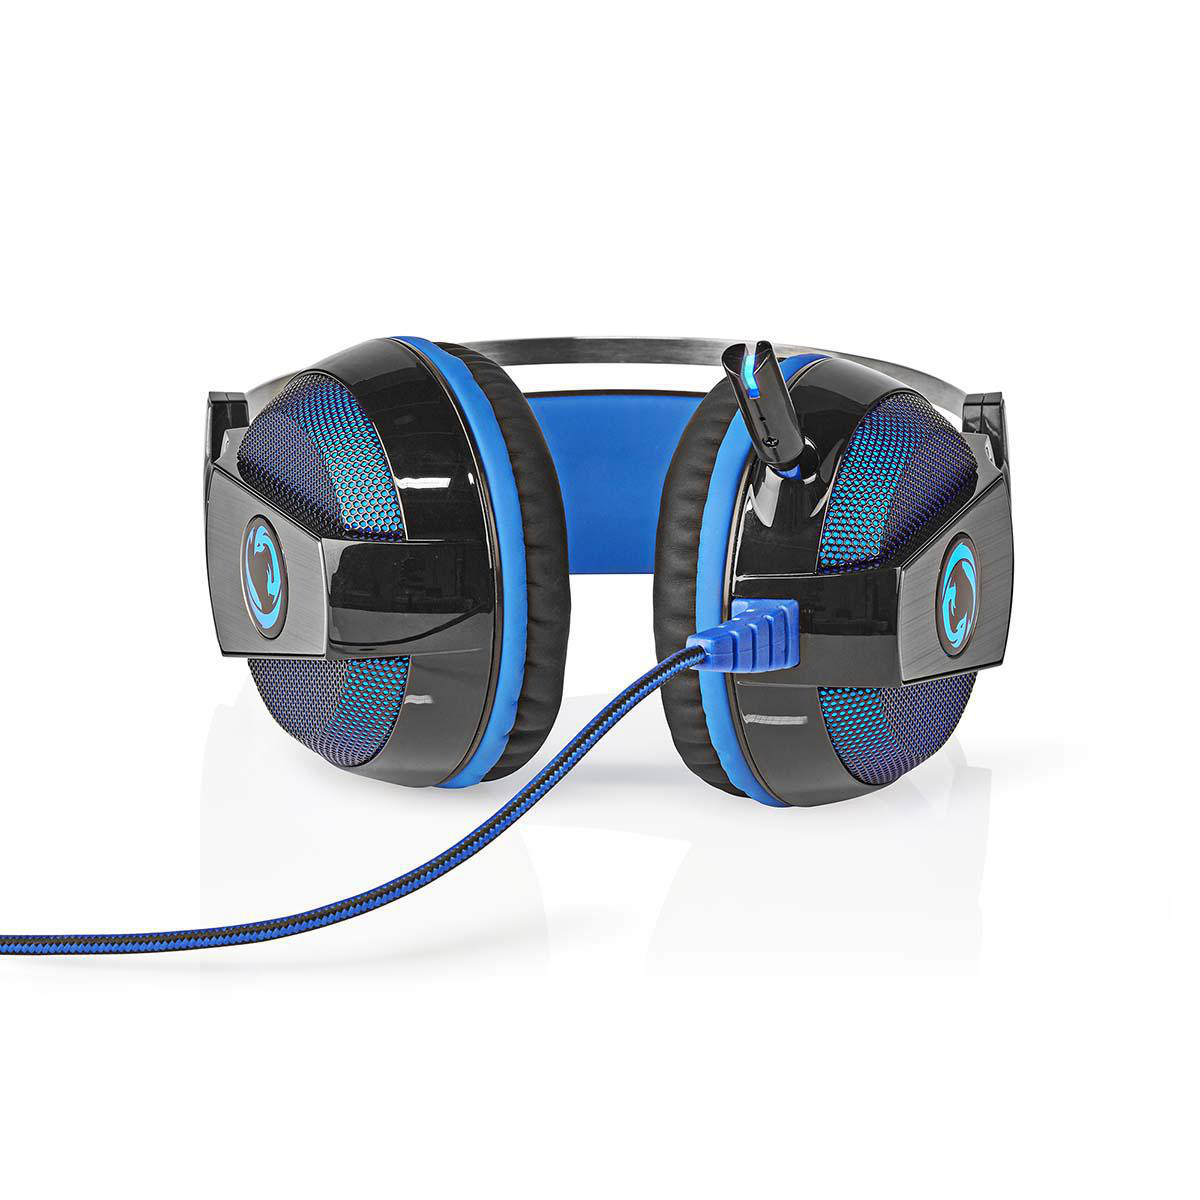 Nedis GHST500BK Gaming Headset Über Ohr Surround | USB Type-A | Biegbar & einziehbare Mikrofon